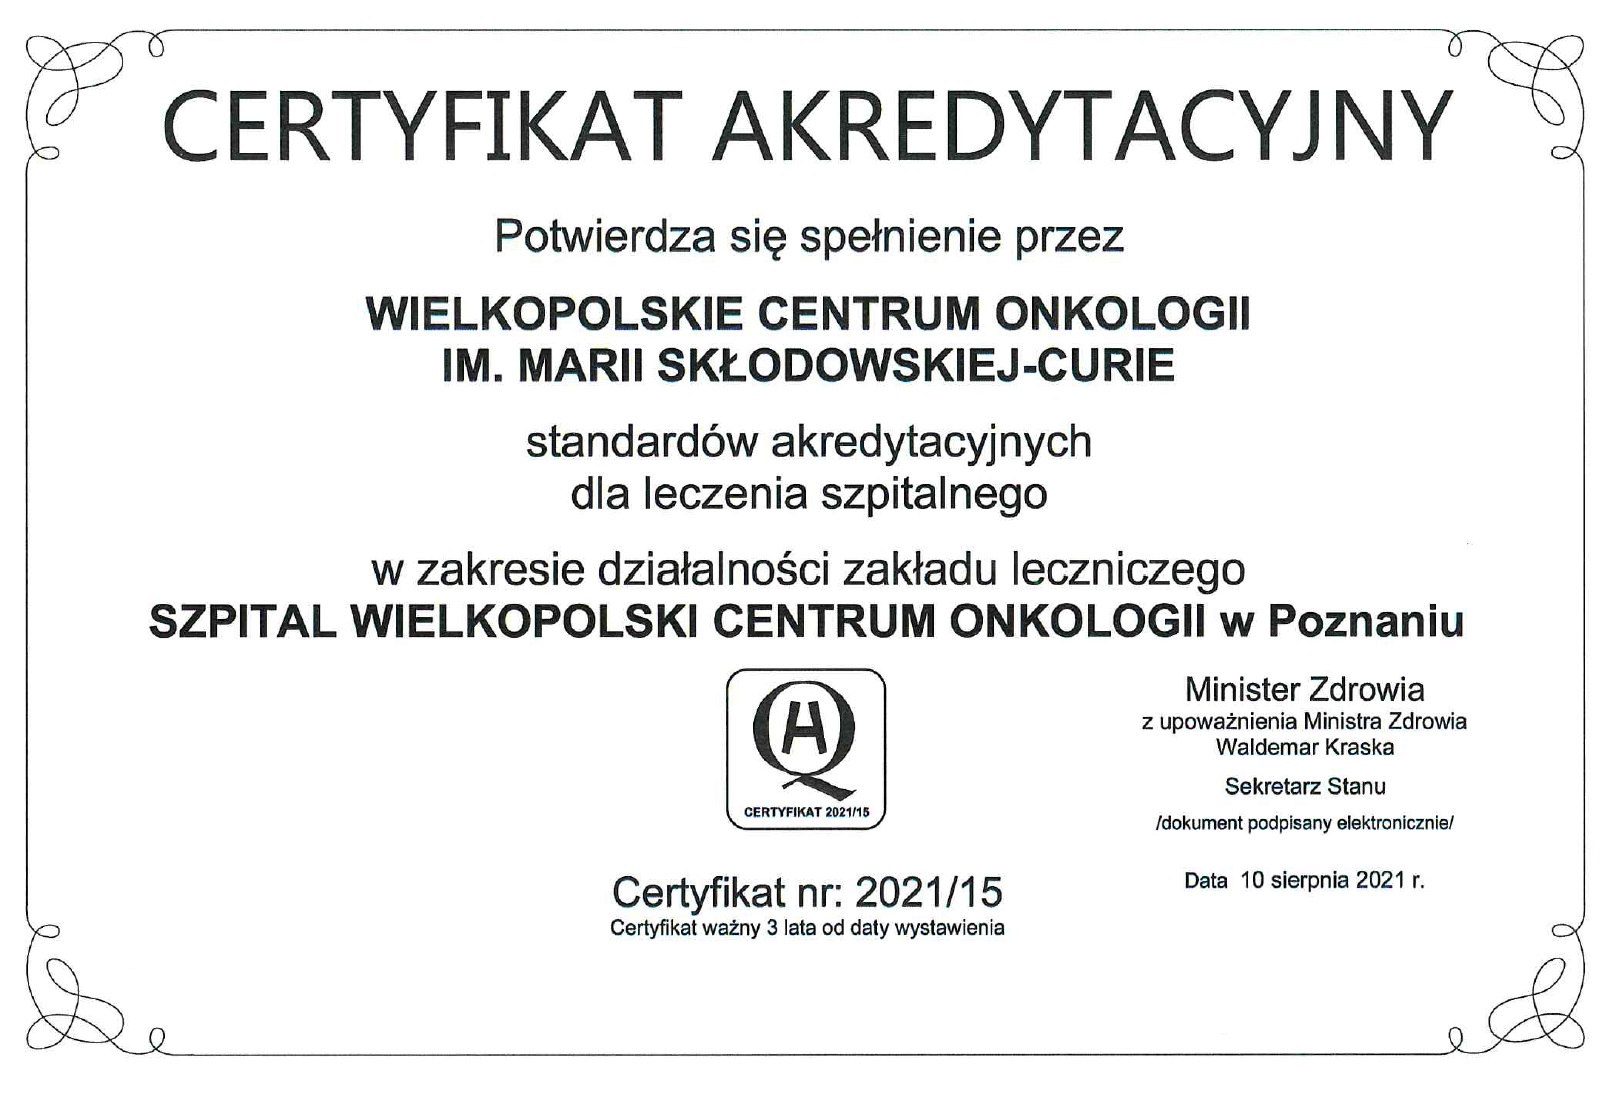 Certyfikat potwierdzający spełnienie standardów akredytacyjnych dla leczenia szpitalnego przez WCO